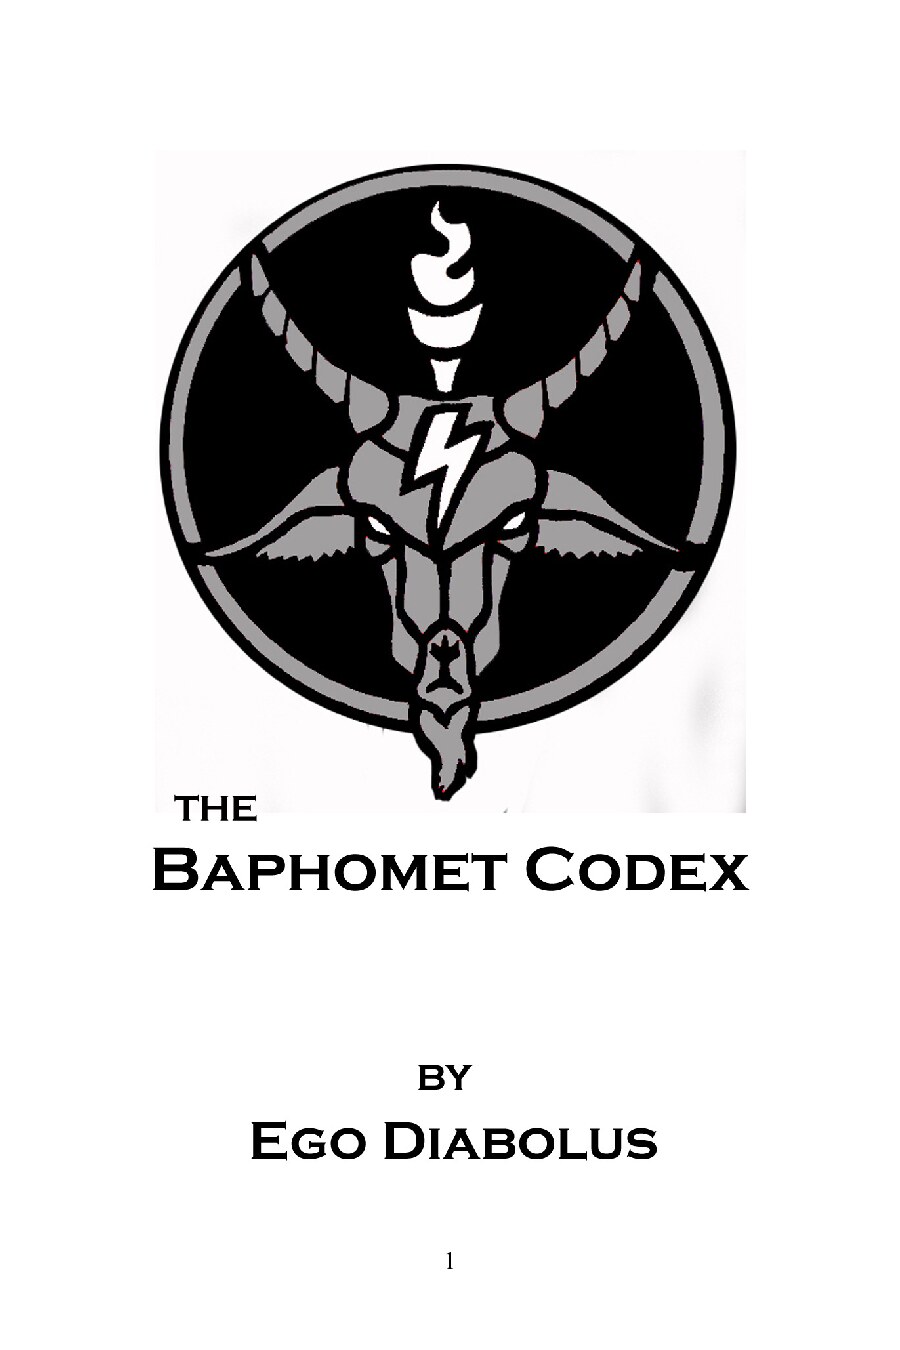 The Baphomet Codex